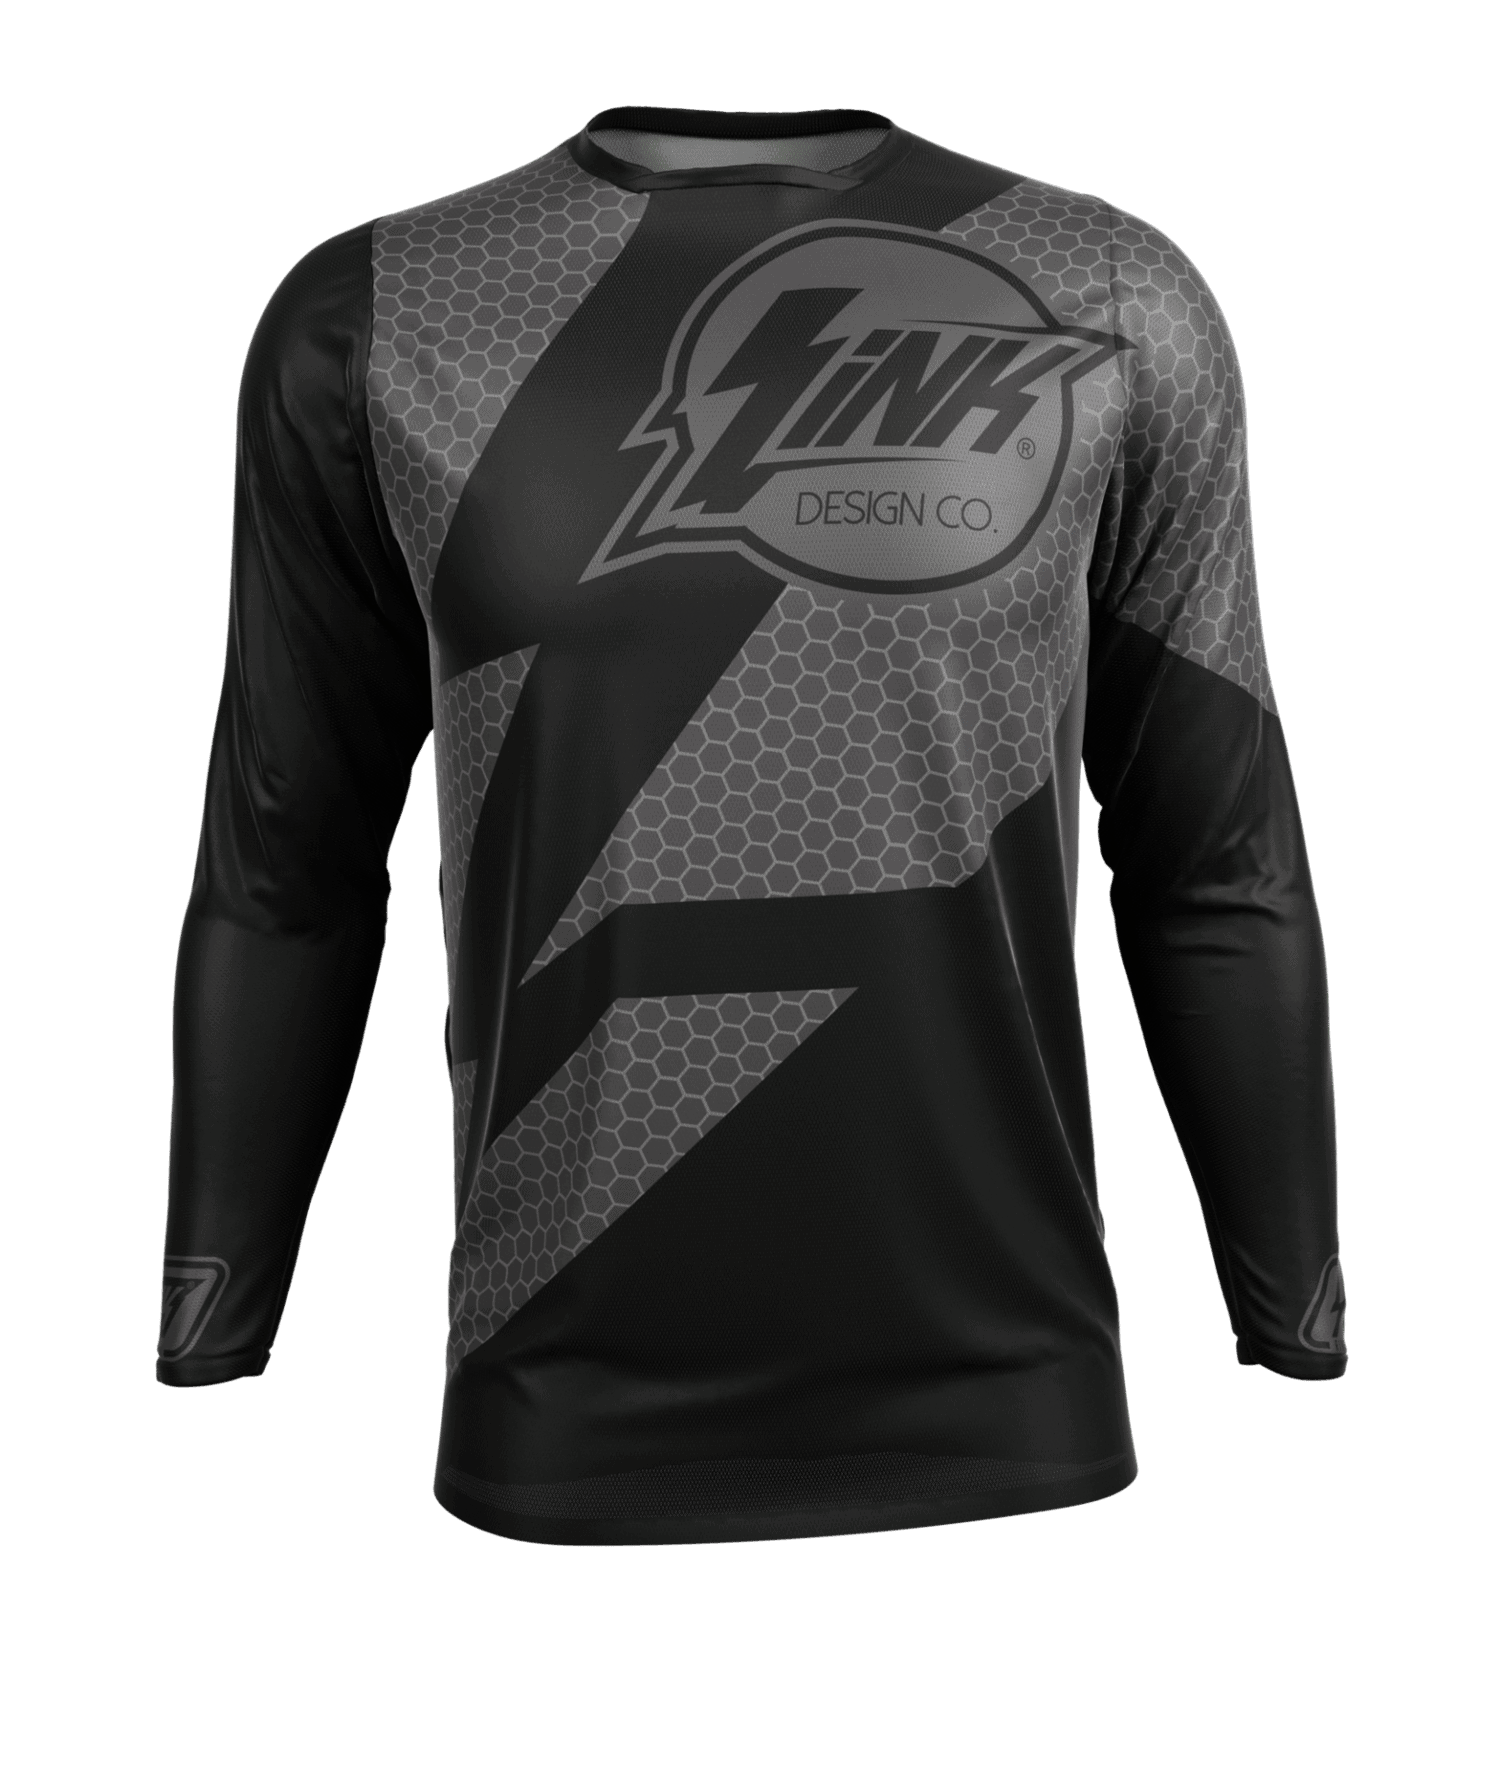 sublimation jersey design black